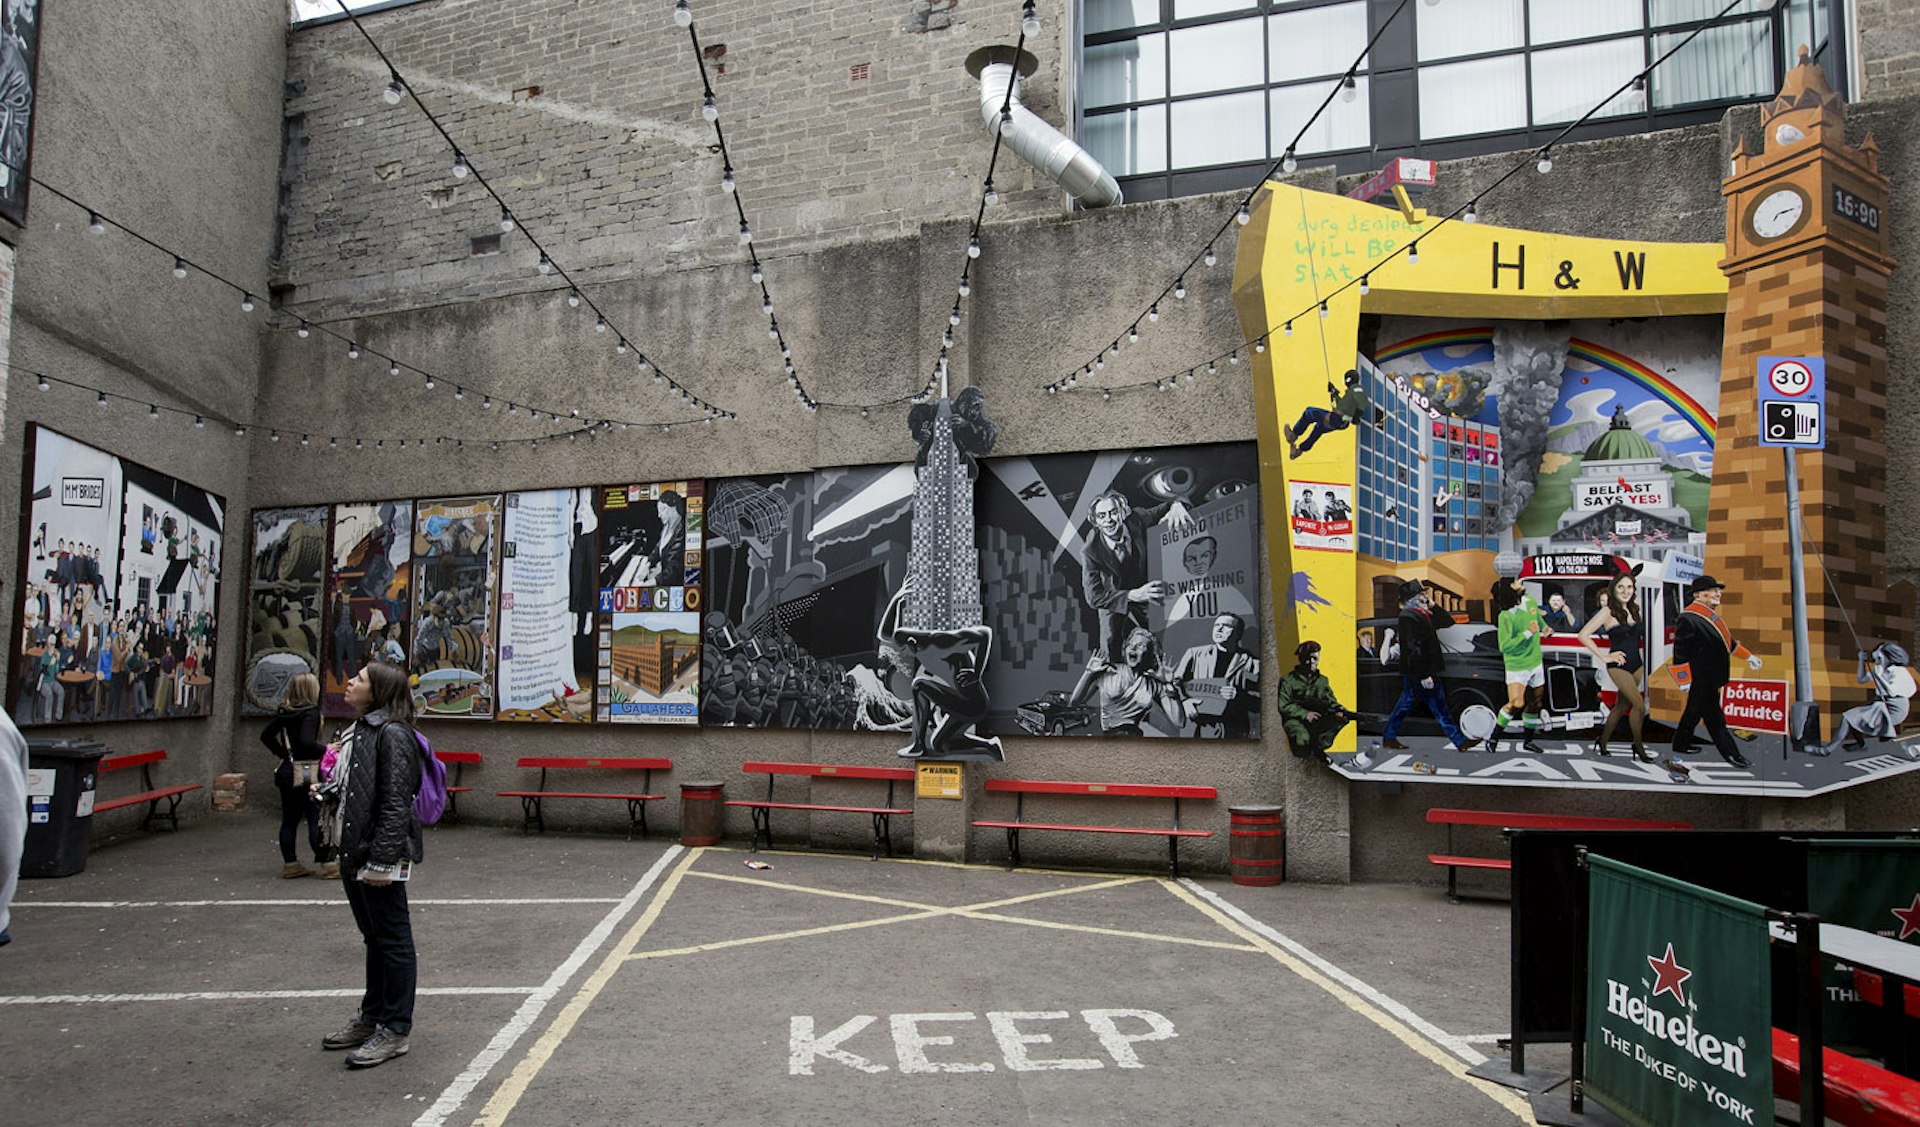 Street art murals in Commercial Court Belfast